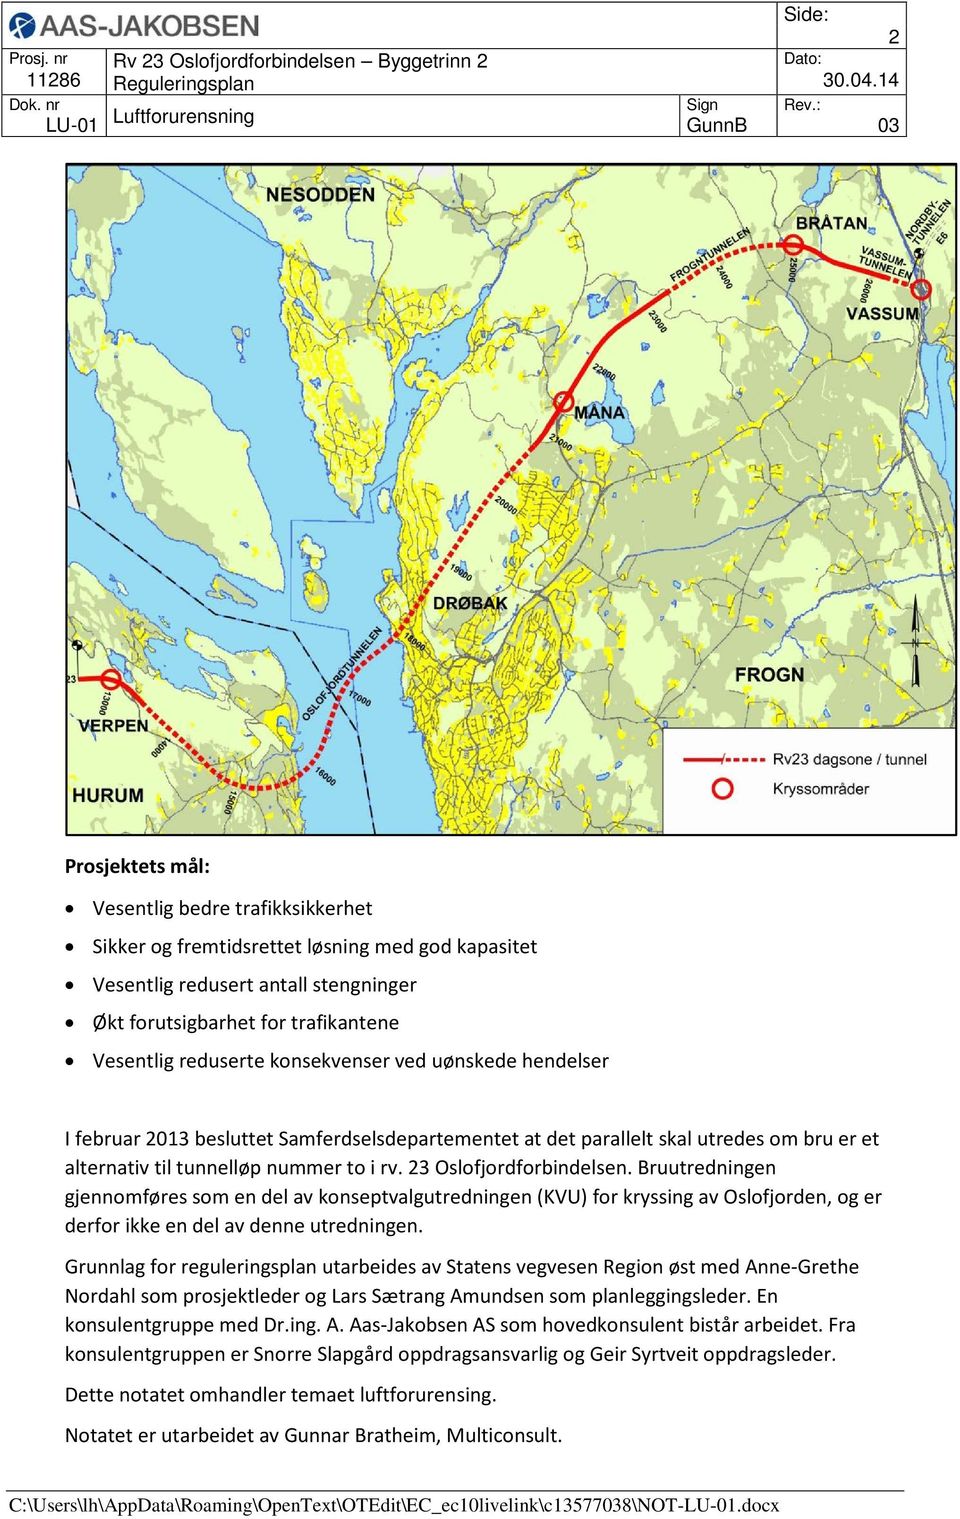 Bruutredningen gjennomføres som en del av konseptvalgutredningen (KVU) for kryssing av Oslofjorden, og er derfor ikke en del av denne utredningen.